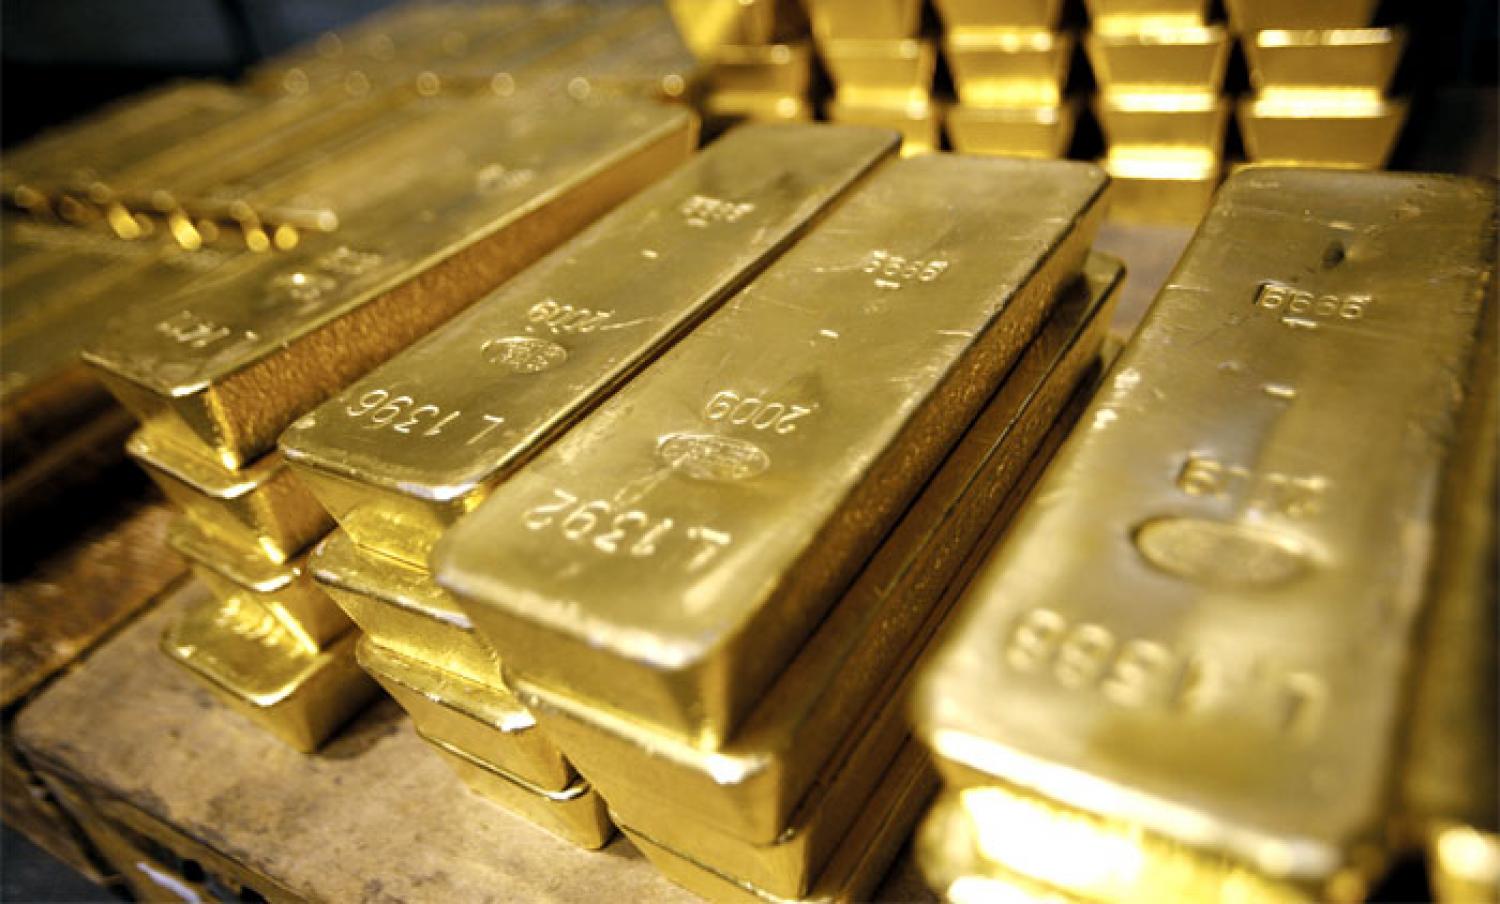 Золотовалютные резервы Узбекистана выросли почти до $36 млрд